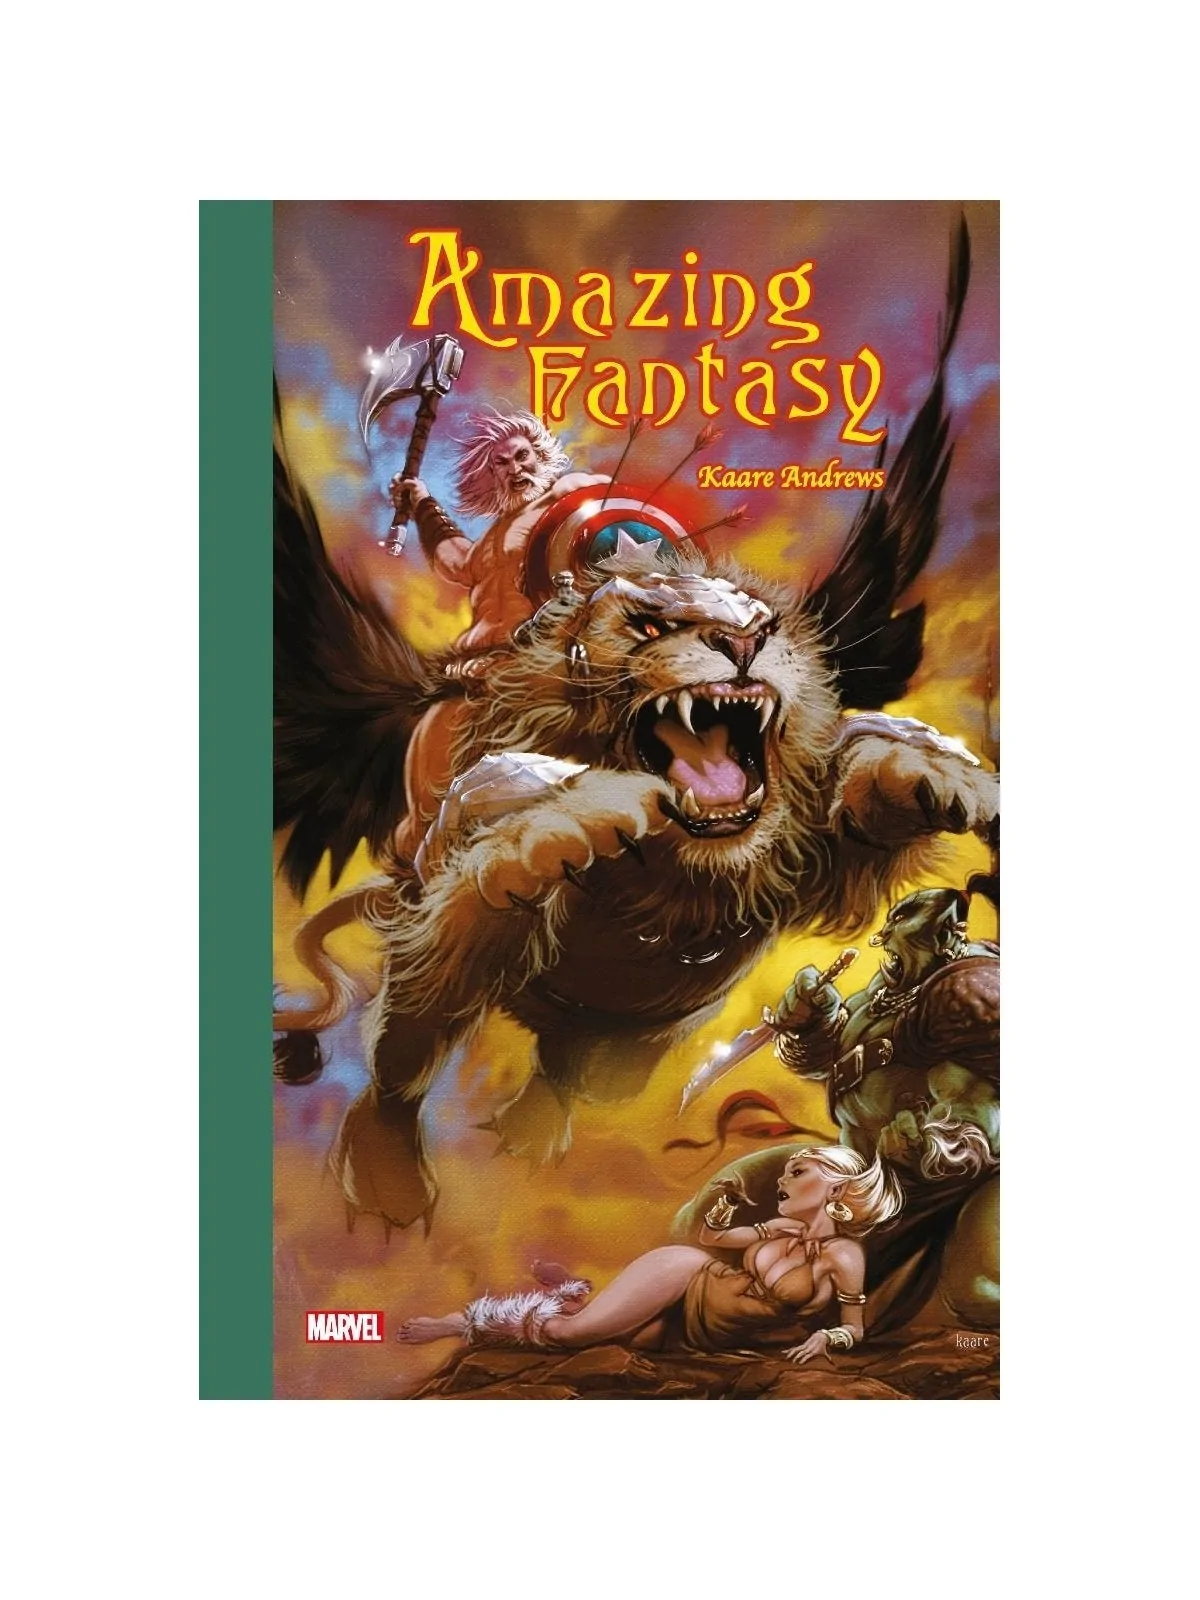 Comprar Amazing Fantasy de Kaare Andrews barato al mejor precio 28,50 